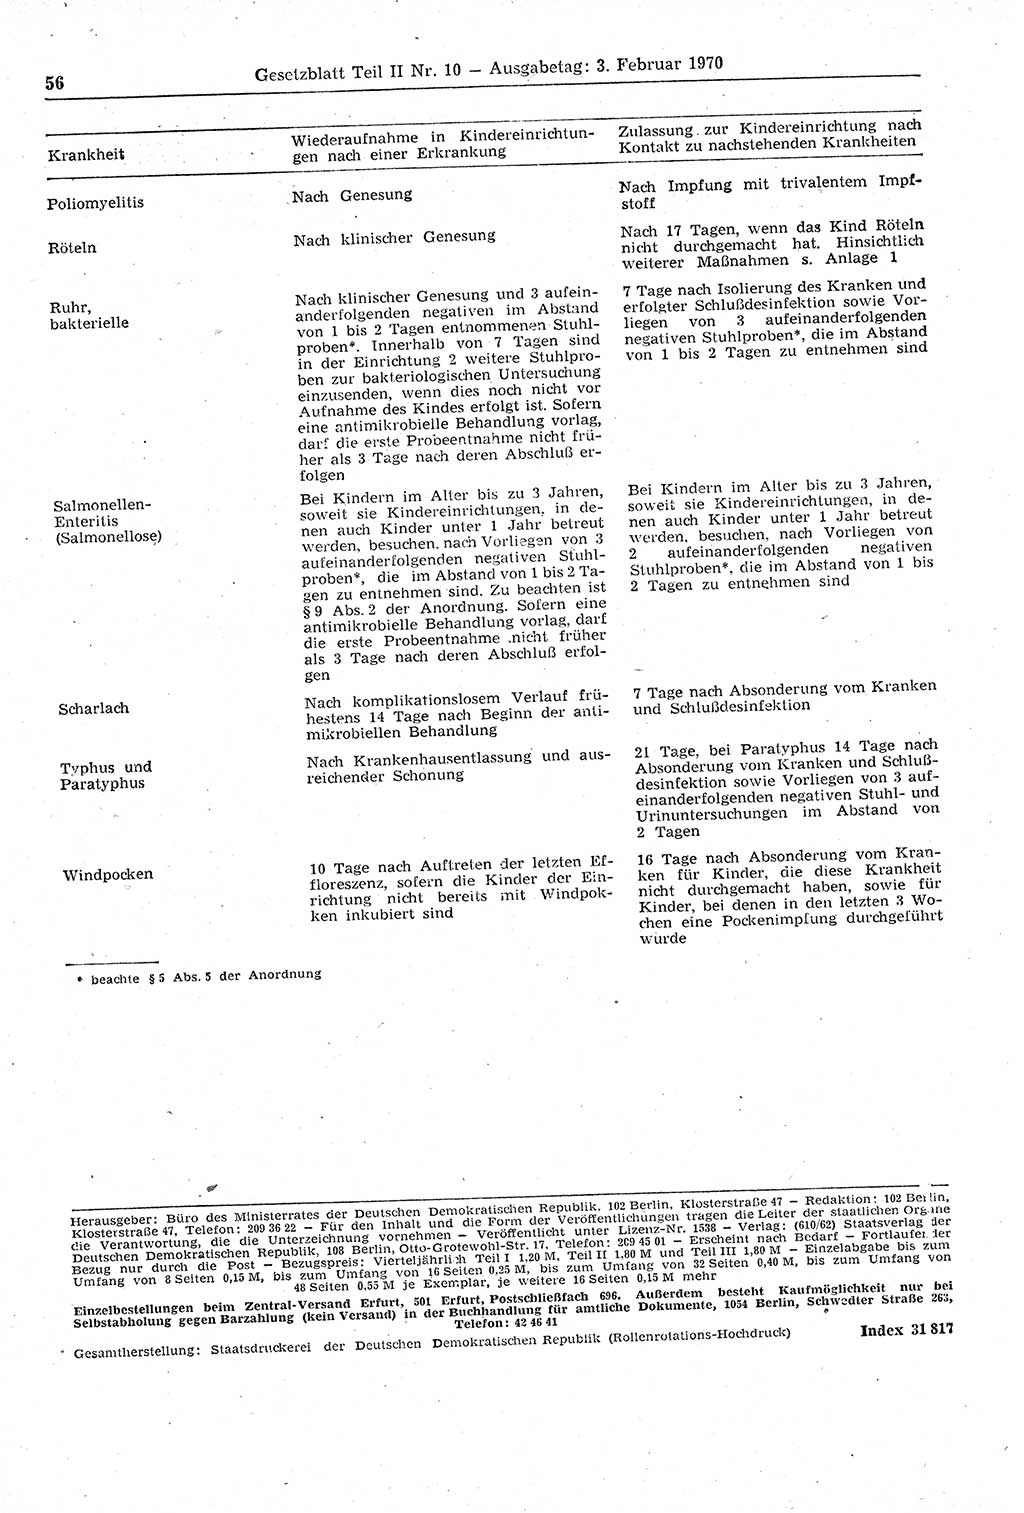 Gesetzblatt (GBl.) der Deutschen Demokratischen Republik (DDR) Teil ⅠⅠ 1970, Seite 56 (GBl. DDR ⅠⅠ 1970, S. 56)